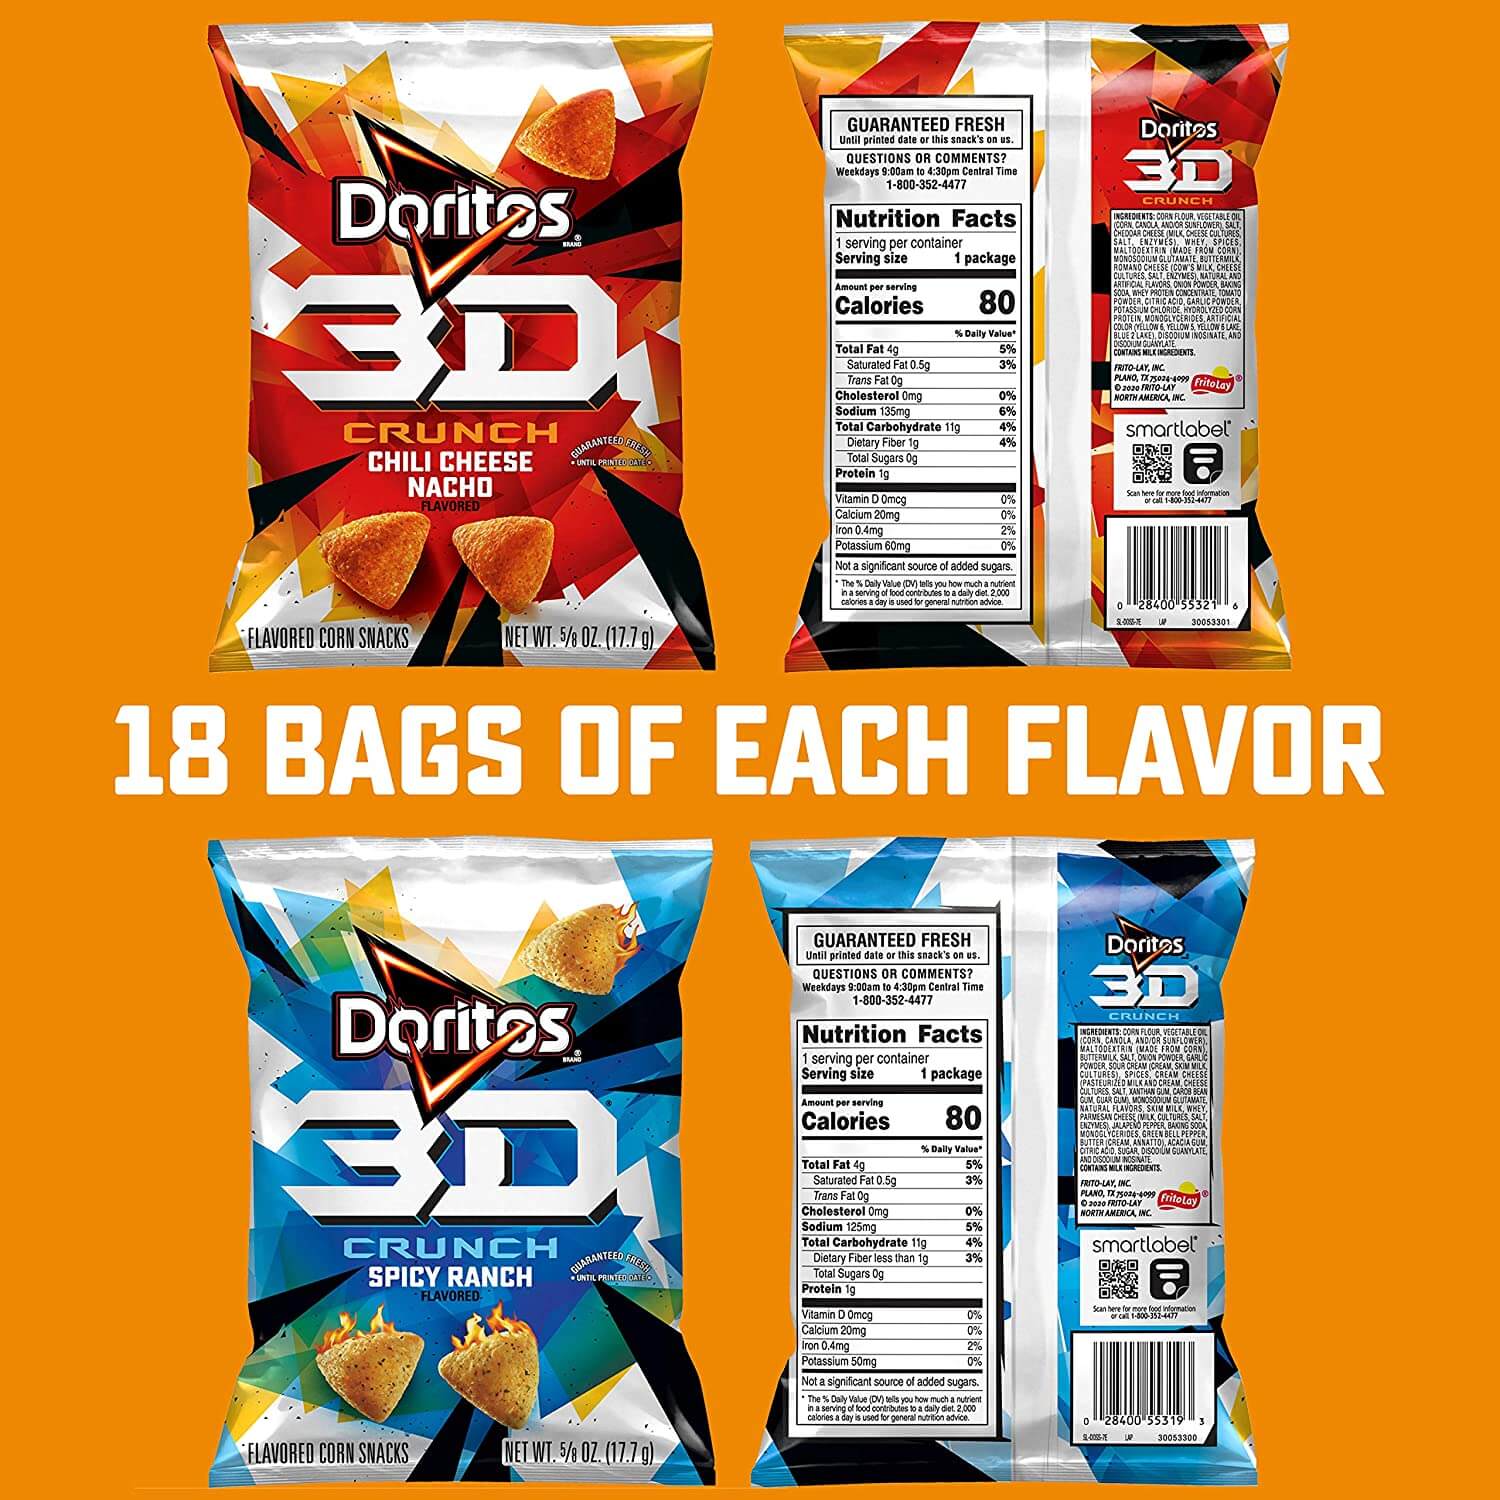 doritos 3d crunch amazon promo codes